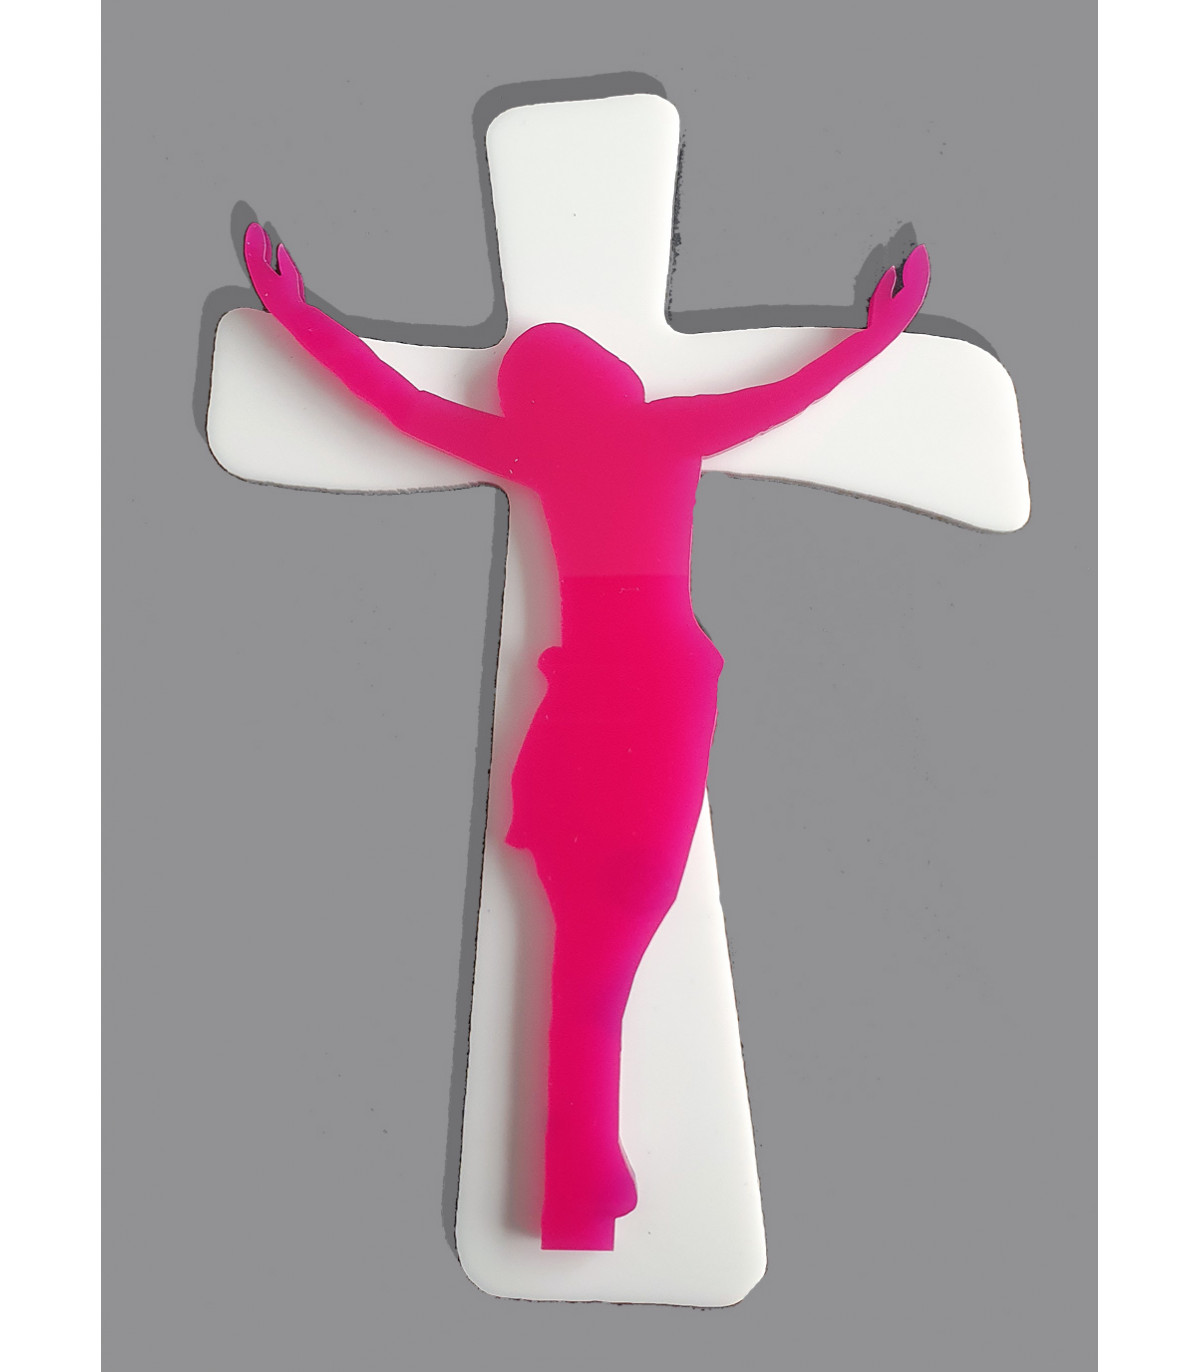 Superbe croix chrétienne fait main, exclusivite boutiquekdo